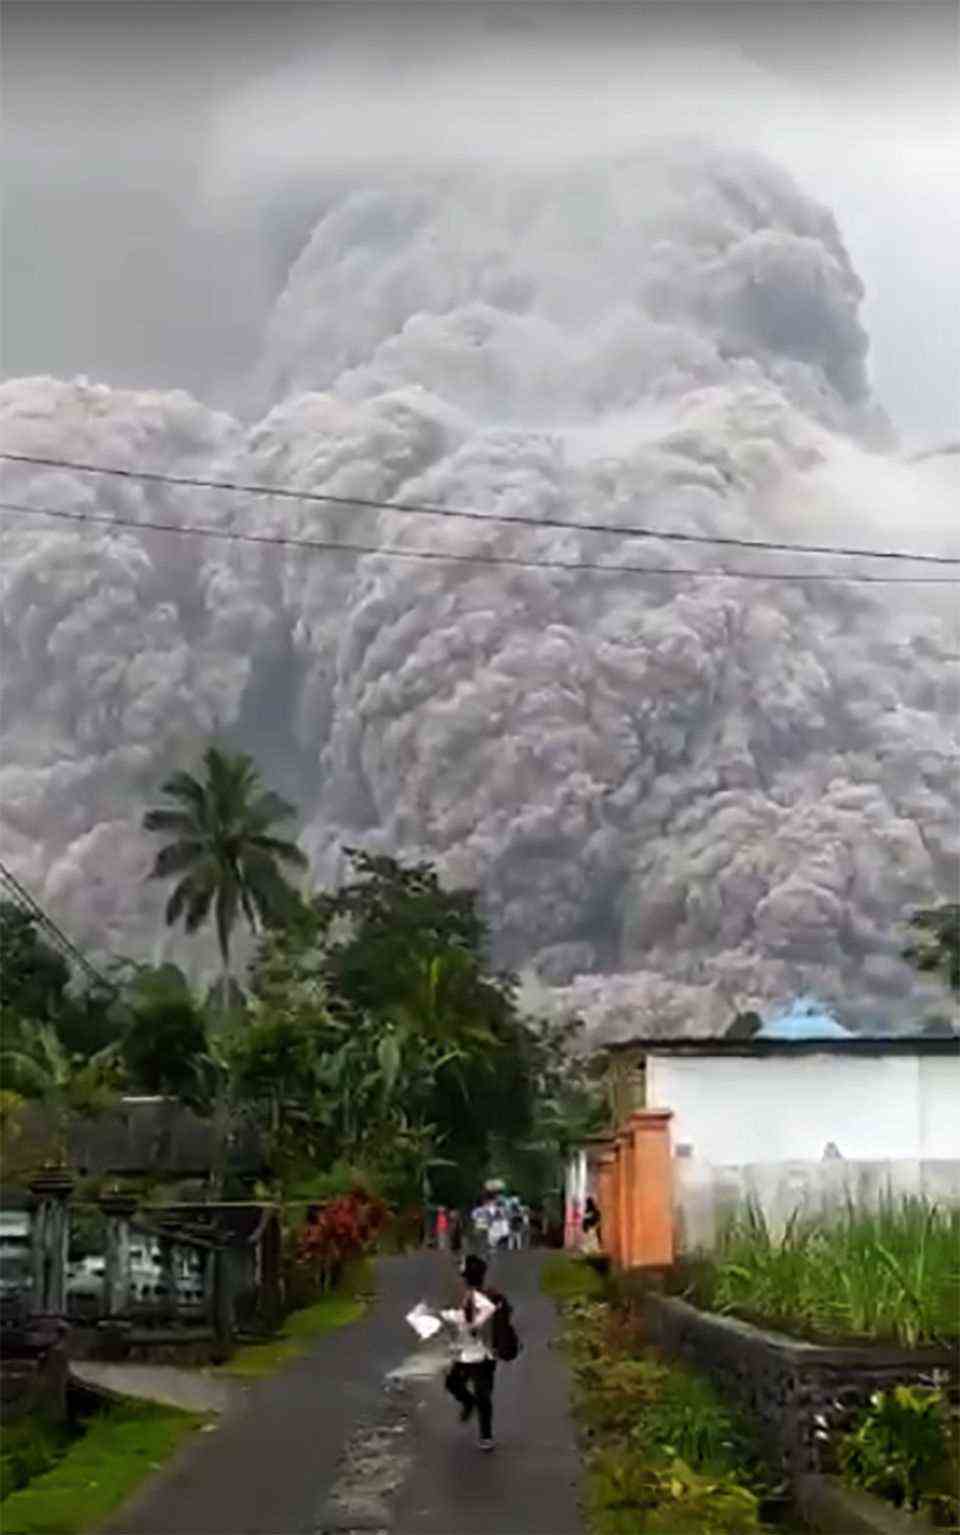 Schreiend laufen Menschen vor der gewaltigen Aschewolke davon, die der Vulkan Semeru ausspuckt